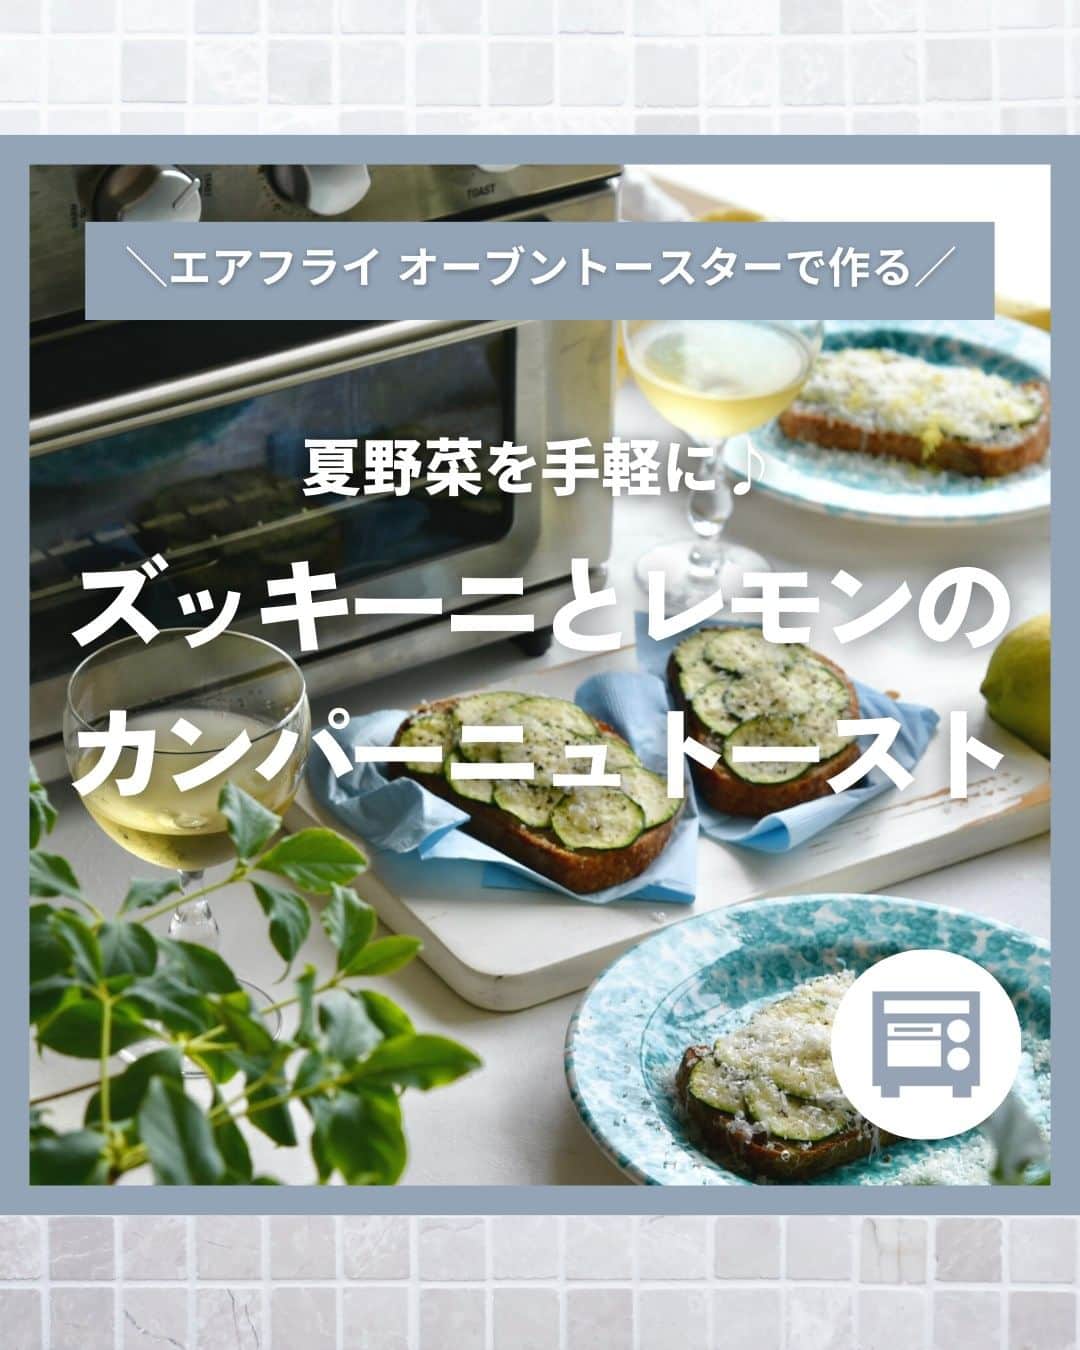 Cuisinart(クイジナート)ジャパン公式アカウントのインスタグラム：「美味しそうと思ったらコメント欄に「❤️」で教えてくださいね♪  夏野菜を手軽に♪ズッキーニとレモンのカンパーニュトースト  旬の夏野菜「ズッキーニ」をトーストと一緒に 手軽に美味しく食べられるレシピを紹介します✨  クイジナートの「エアフライ オーブントースター」は、 4通りのトースト機能を搭載！ アレンジトーストは「TOAST＋FAN」モードで熱風を対流させながら パンと具材を短時間で加熱し、最適な焼き上がりに♪  薄くスライスしたズッキーニとレモン、たっぷりパルミジャーノの組み合わせは 暑い日の朝食や白ワインに合わせるのもおすすめです😊  🍞ズッキーニとレモンのカンパーニュトースト 📝材料 （4切分） カンパーニュスライス…4枚 バター…15g～お好み ズッキーニ…適量 塩、黒…少々 パルミジャーノレジャーノ…適量 レモン…1個  📝作り方 ① カンパーニュにバターを塗り、スライサーでスライスしたズッキーニをたっぷりと乗せる。  ② 塩、黒胡椒を少々ふり、上からパルミジャーノレジャーノをお好みの量削って乗せる。  ③エアフライオーブントースターのTOAST+FAN 200℃で3～4分焼く。  ④仕上げにさらにパルミジャーノレジャーノを削って黒胡椒をふり、レモンの皮も削ってお好みでレモン果汁も搾りかける。  ・。・。・。・。・。・⁣ 📷Photo： @reiko.t.table  🍞Item：エアフライ オーブントースター  🔍TOA38SJ(シルバー） TOA-38WJ（ホワイト）⁣ ・。・。・。・。・。・⁣  ーーーーー クイジナート公式HPでは、毎日の料理が楽しくなる様々な製品情報やレシピを公開中♪ 詳しくはプロフィールのリンクから！ ▶️ @cuisine_art ーーーーー  #Cuisinart #クイジナート #クイジナートのある生活 #クイジナートLOVE #時短調理 #時短家電 #キッチン家電 #おうちごはん #おうち時間を楽しむ #丁寧な暮らし #豊かな食卓 #美味しい時間 #料理好きな人と繋がりたい #クイジナートエアフライオーブントースター #クイジナートノンフライオーブントースター #オーブントースター #トーストレシピ #トースターレシピ #夏野菜 #夏野菜レシピ #簡単レシピ  #時短レシピ #ノンフライヤー #ズッキーニ #ノンフライ調理 #今日のごはん #おうちごはん #ズッキーニレシピ #ズッキーニトースト #朝ごパン」